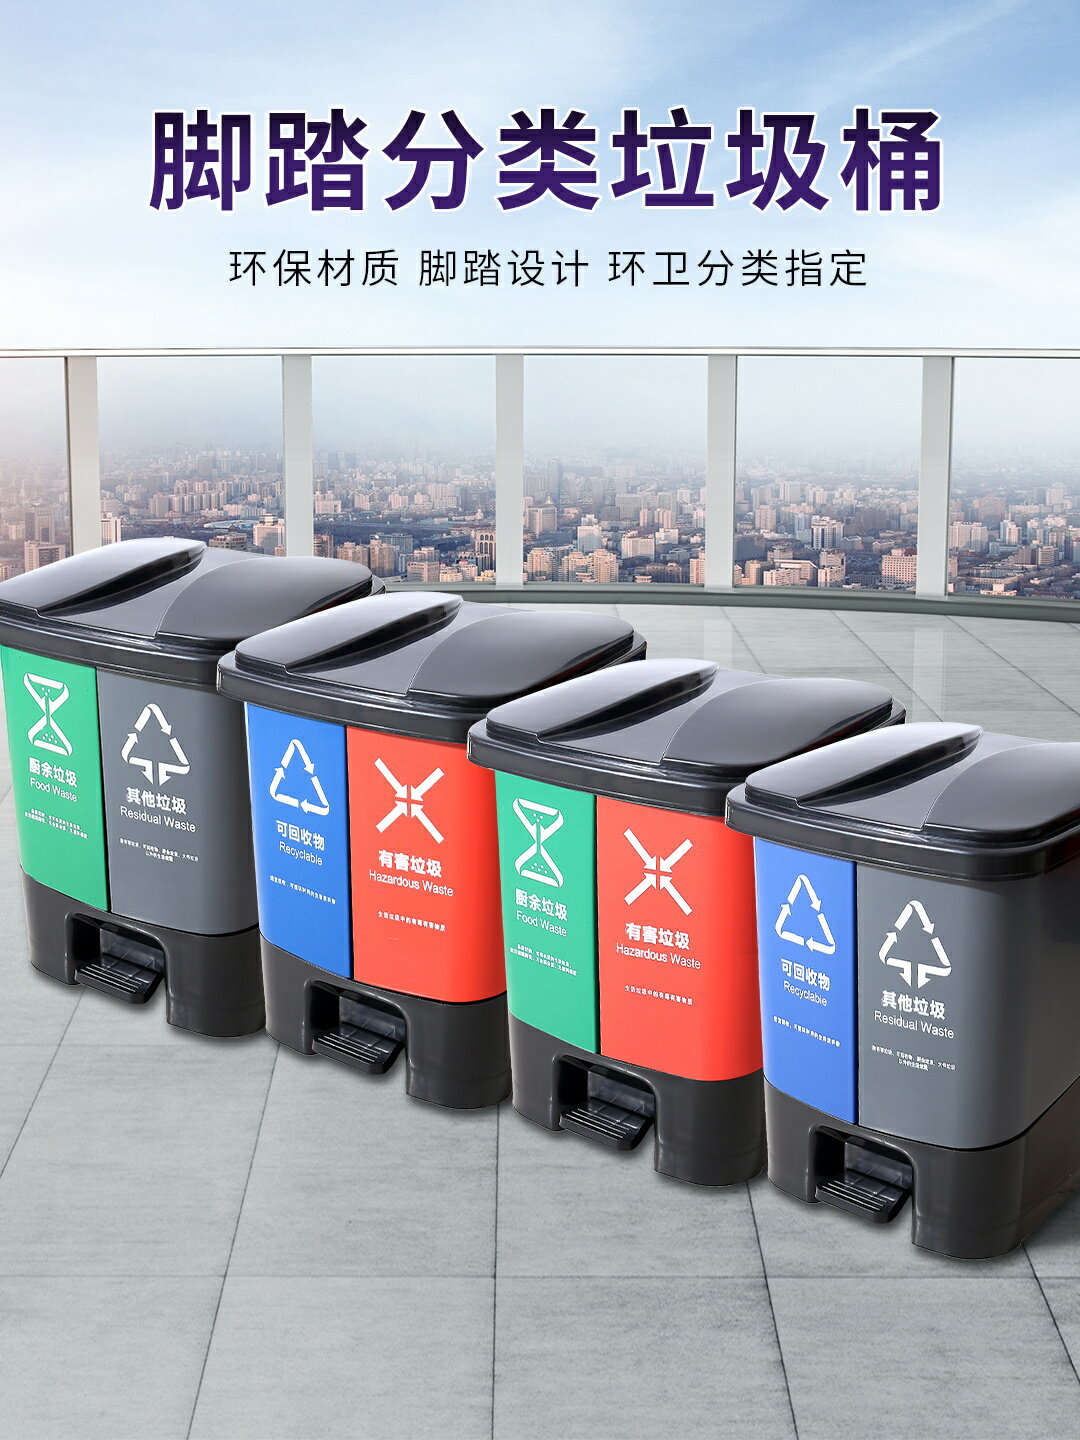 戶外垃圾桶 垃圾分類垃圾桶家用公共場合四分類一體大號商用生活戶外辦公室用『XY12849』